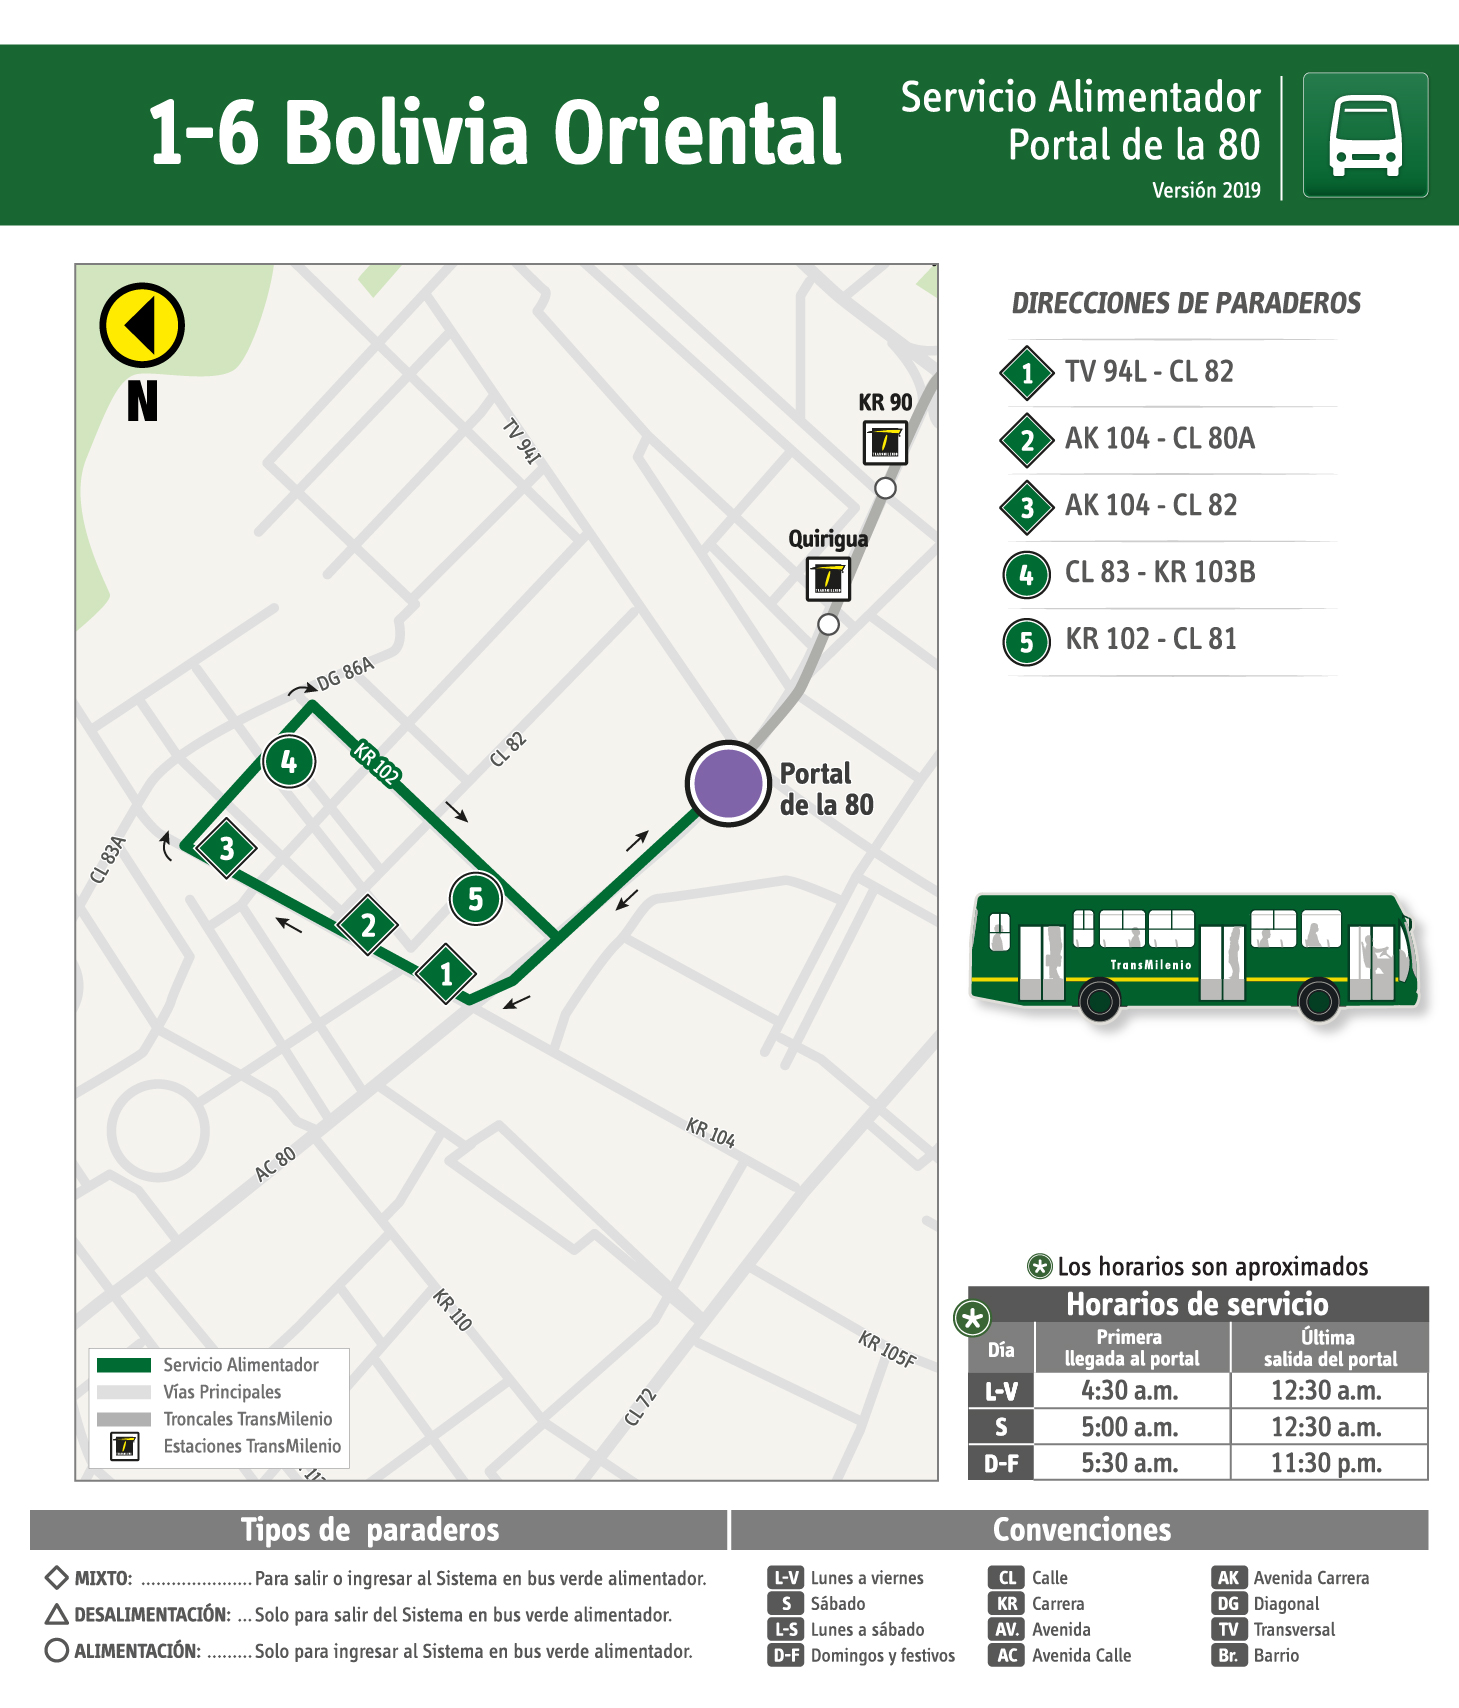 Plegable de la ruta 1-6 Bolivia Oriental